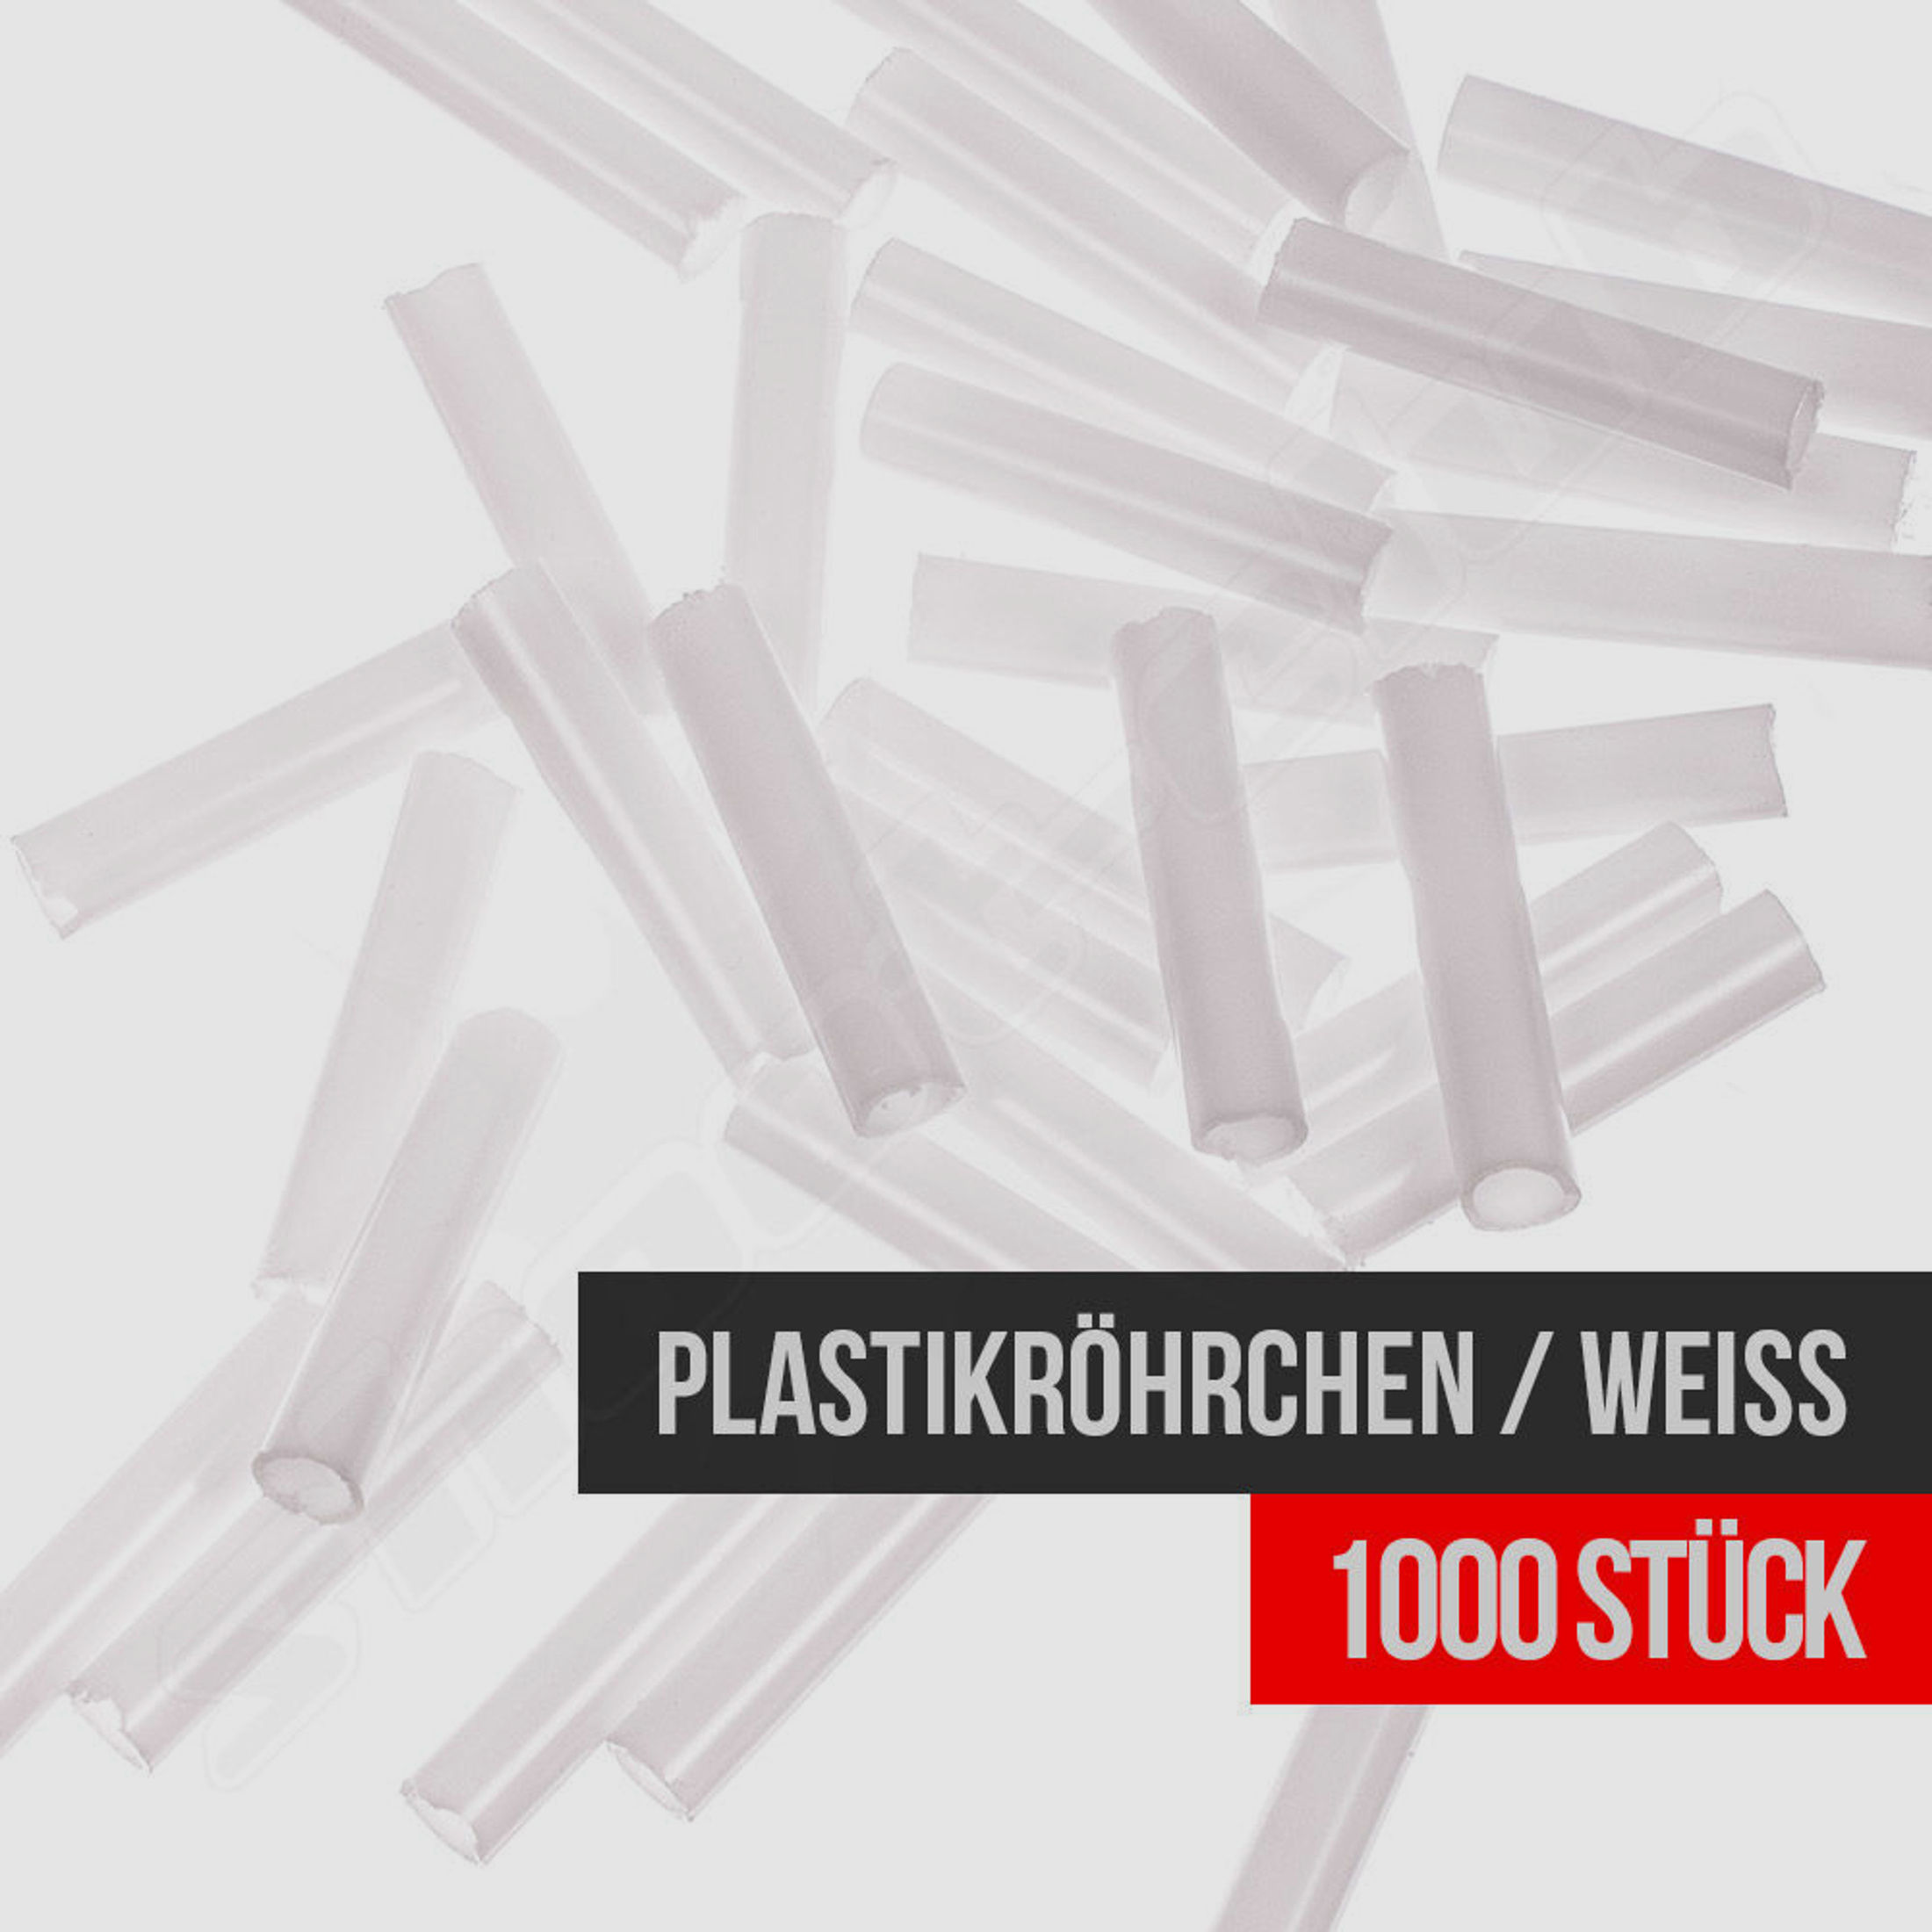 weiße Plastikröhrchen für Kugelfang / Schießbude / 1000 Stück